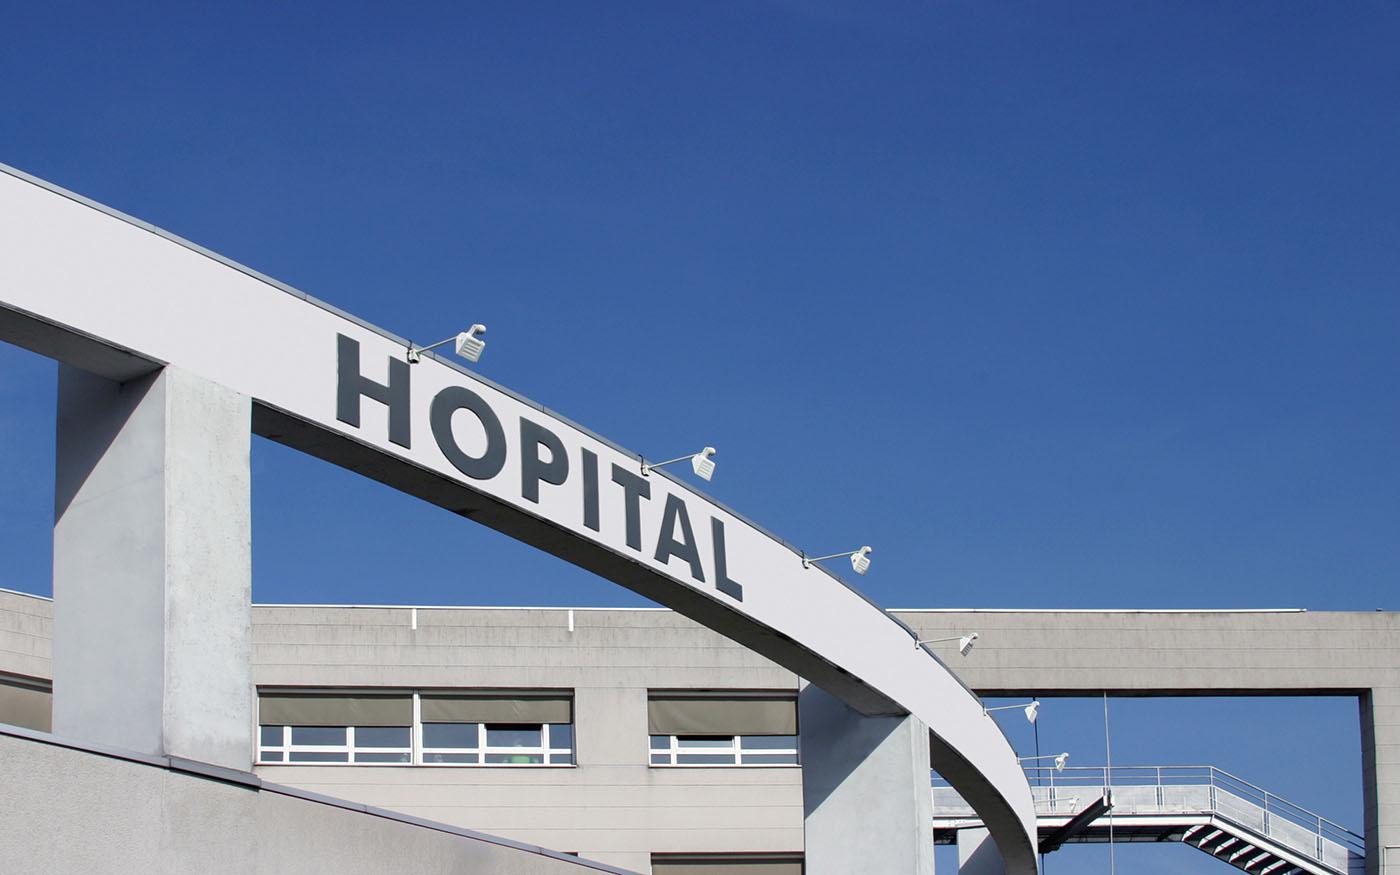 Les hôpitaux au centre des préoccupations sur la protection des données personnelles